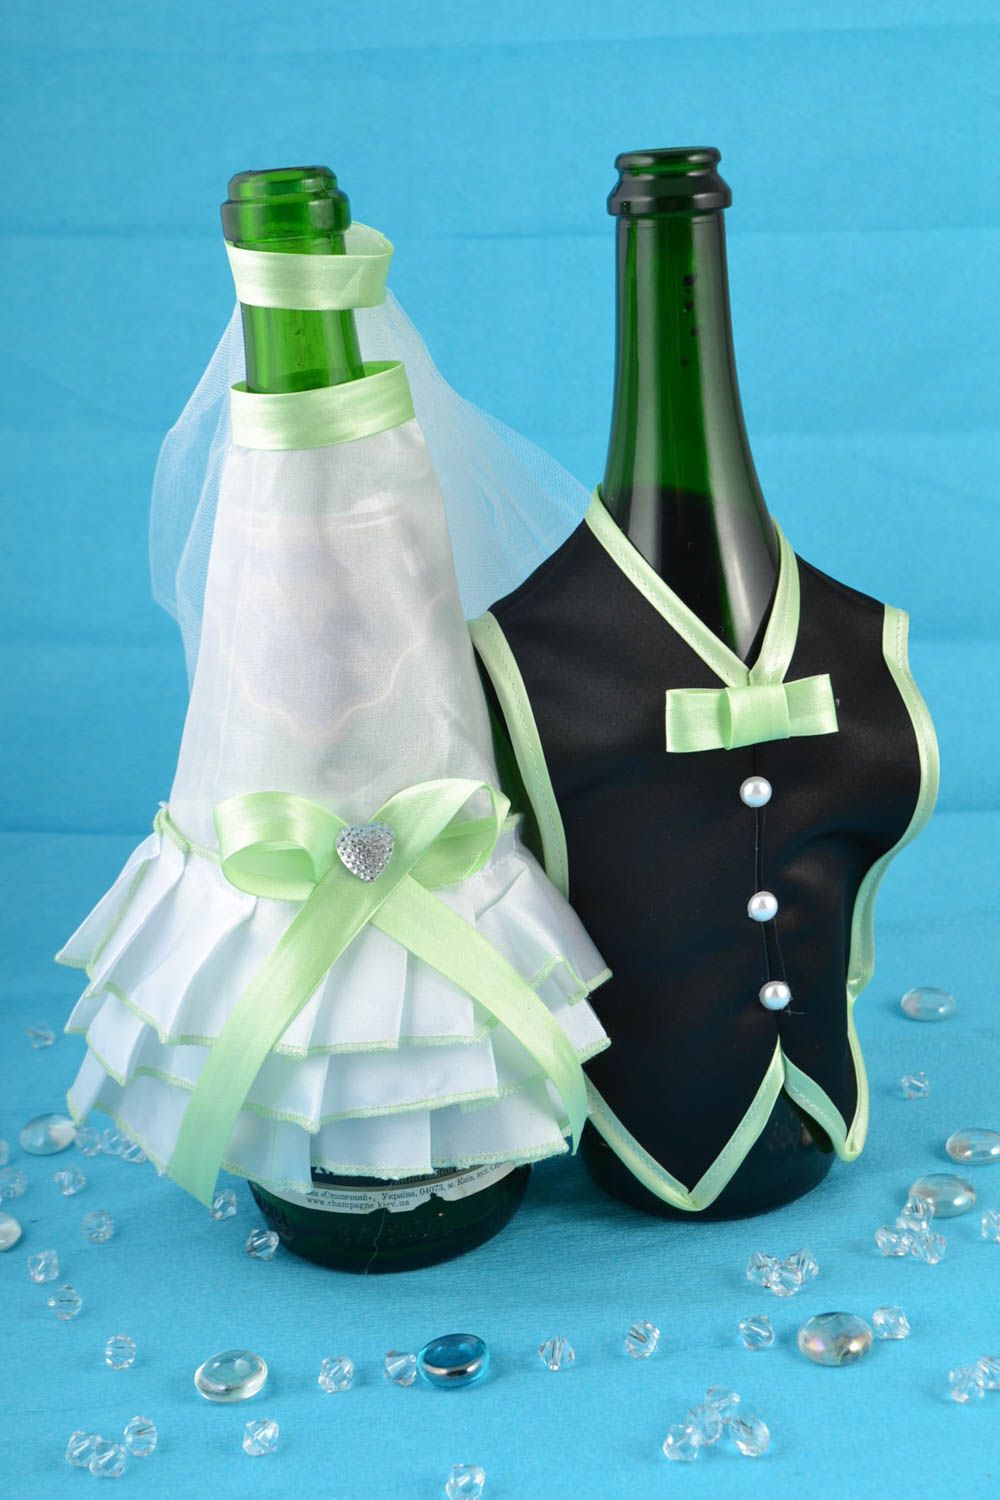 Одежда жених и невеста на бутылки шампанского набор из 2 шт ручная работа фото 1